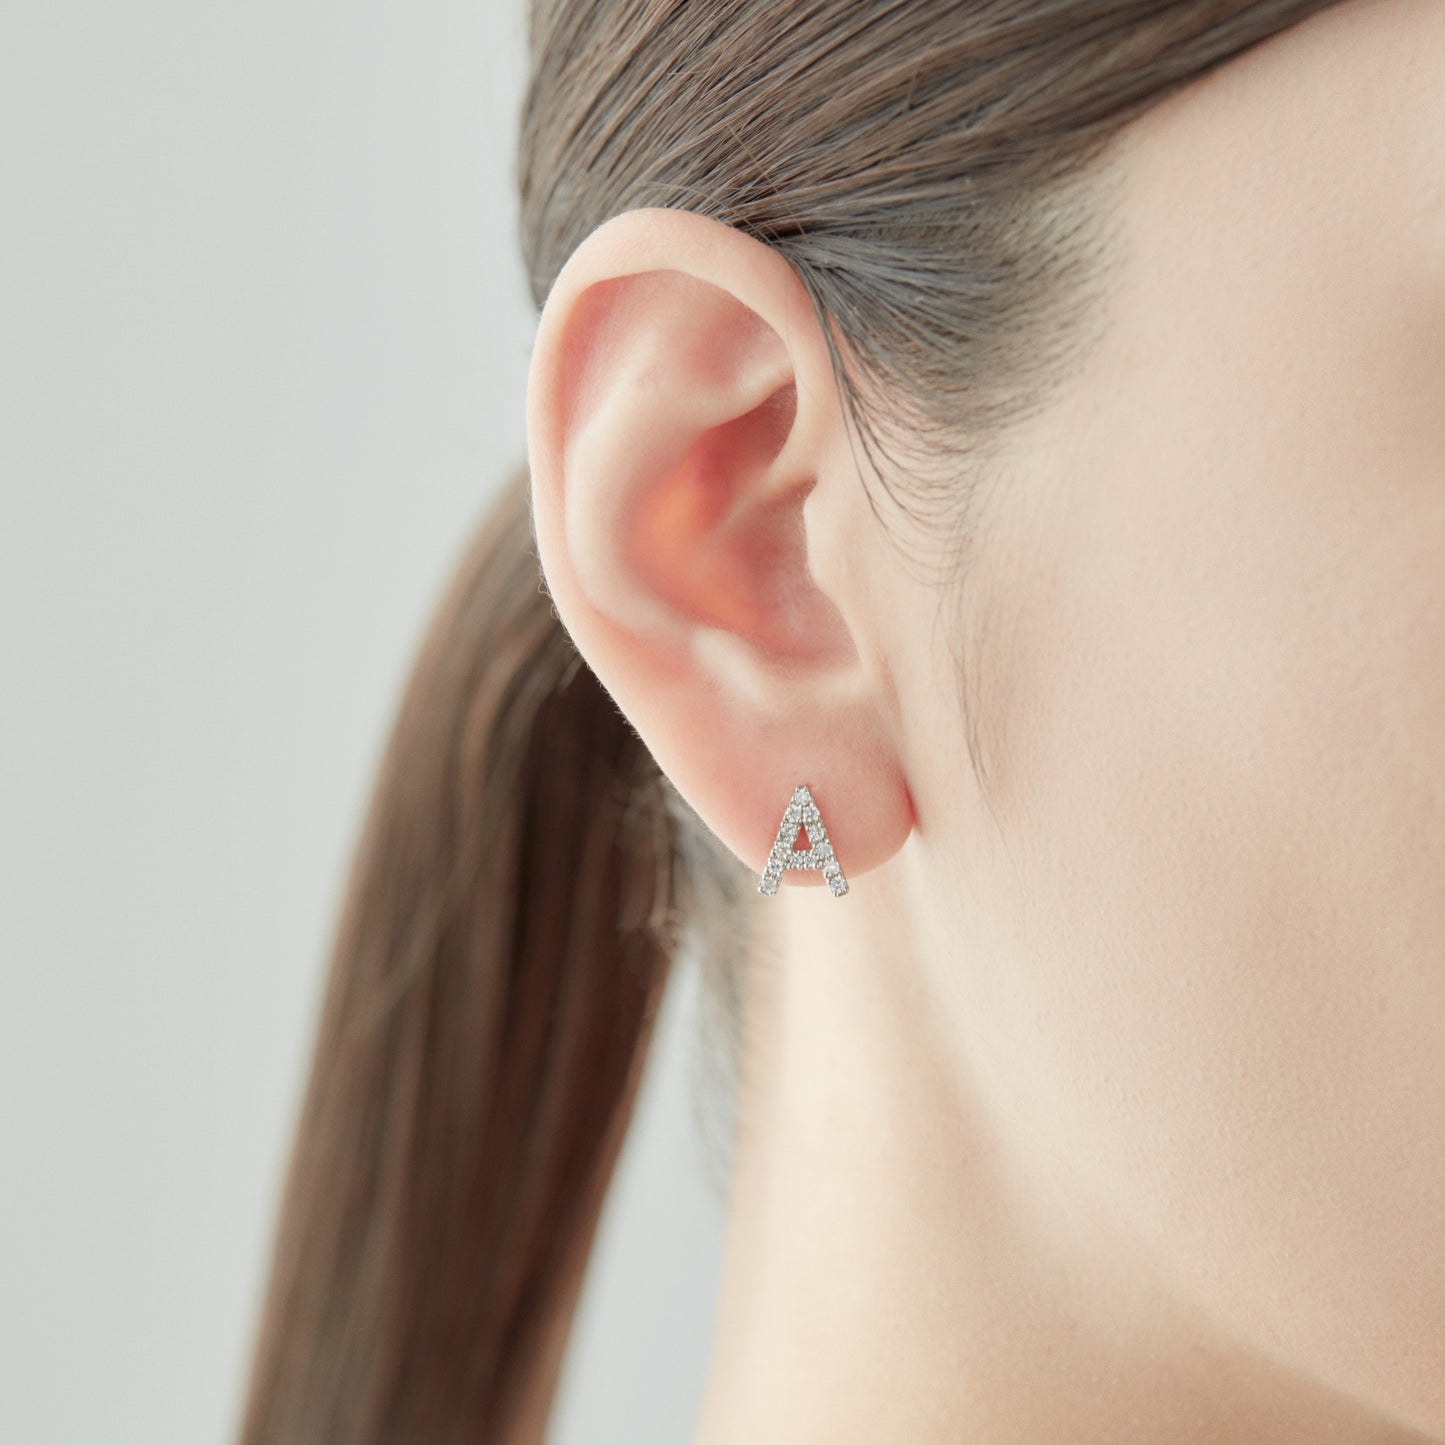 Symbol Pierced earring "A"